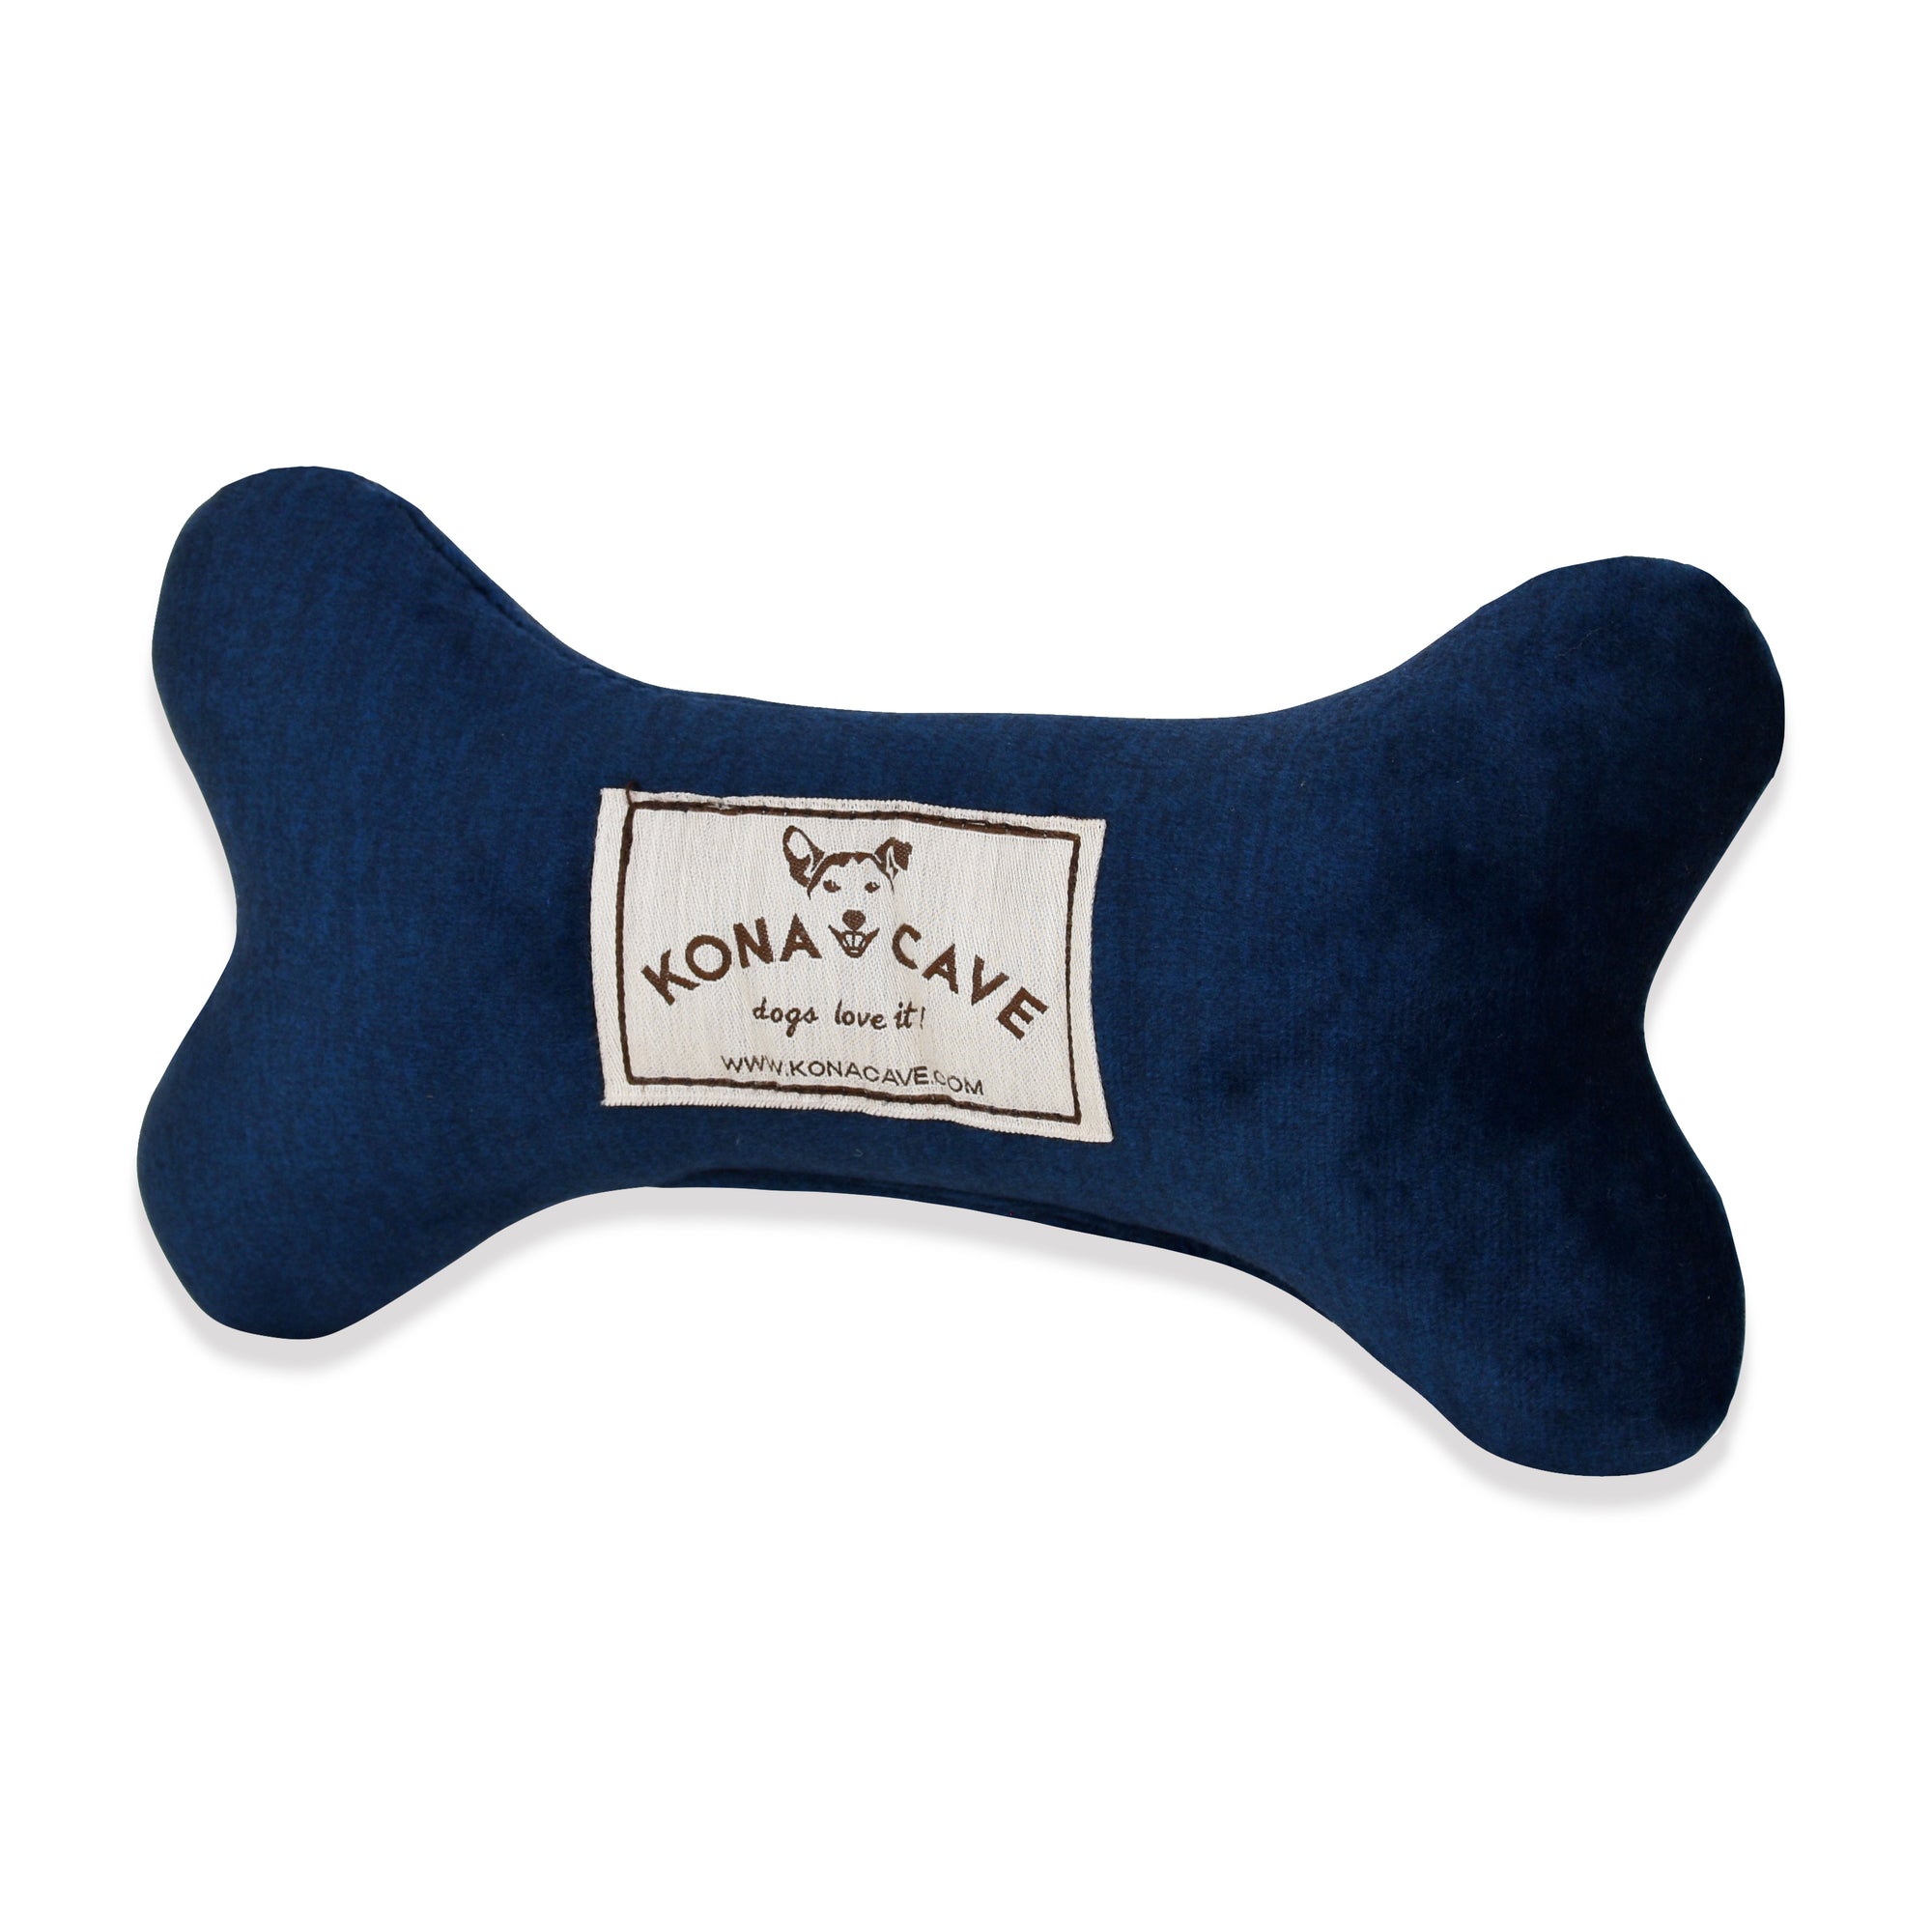 KONA CAVE® Luxury Blue Velvet Dog Bone Toy - Great dog Gifts